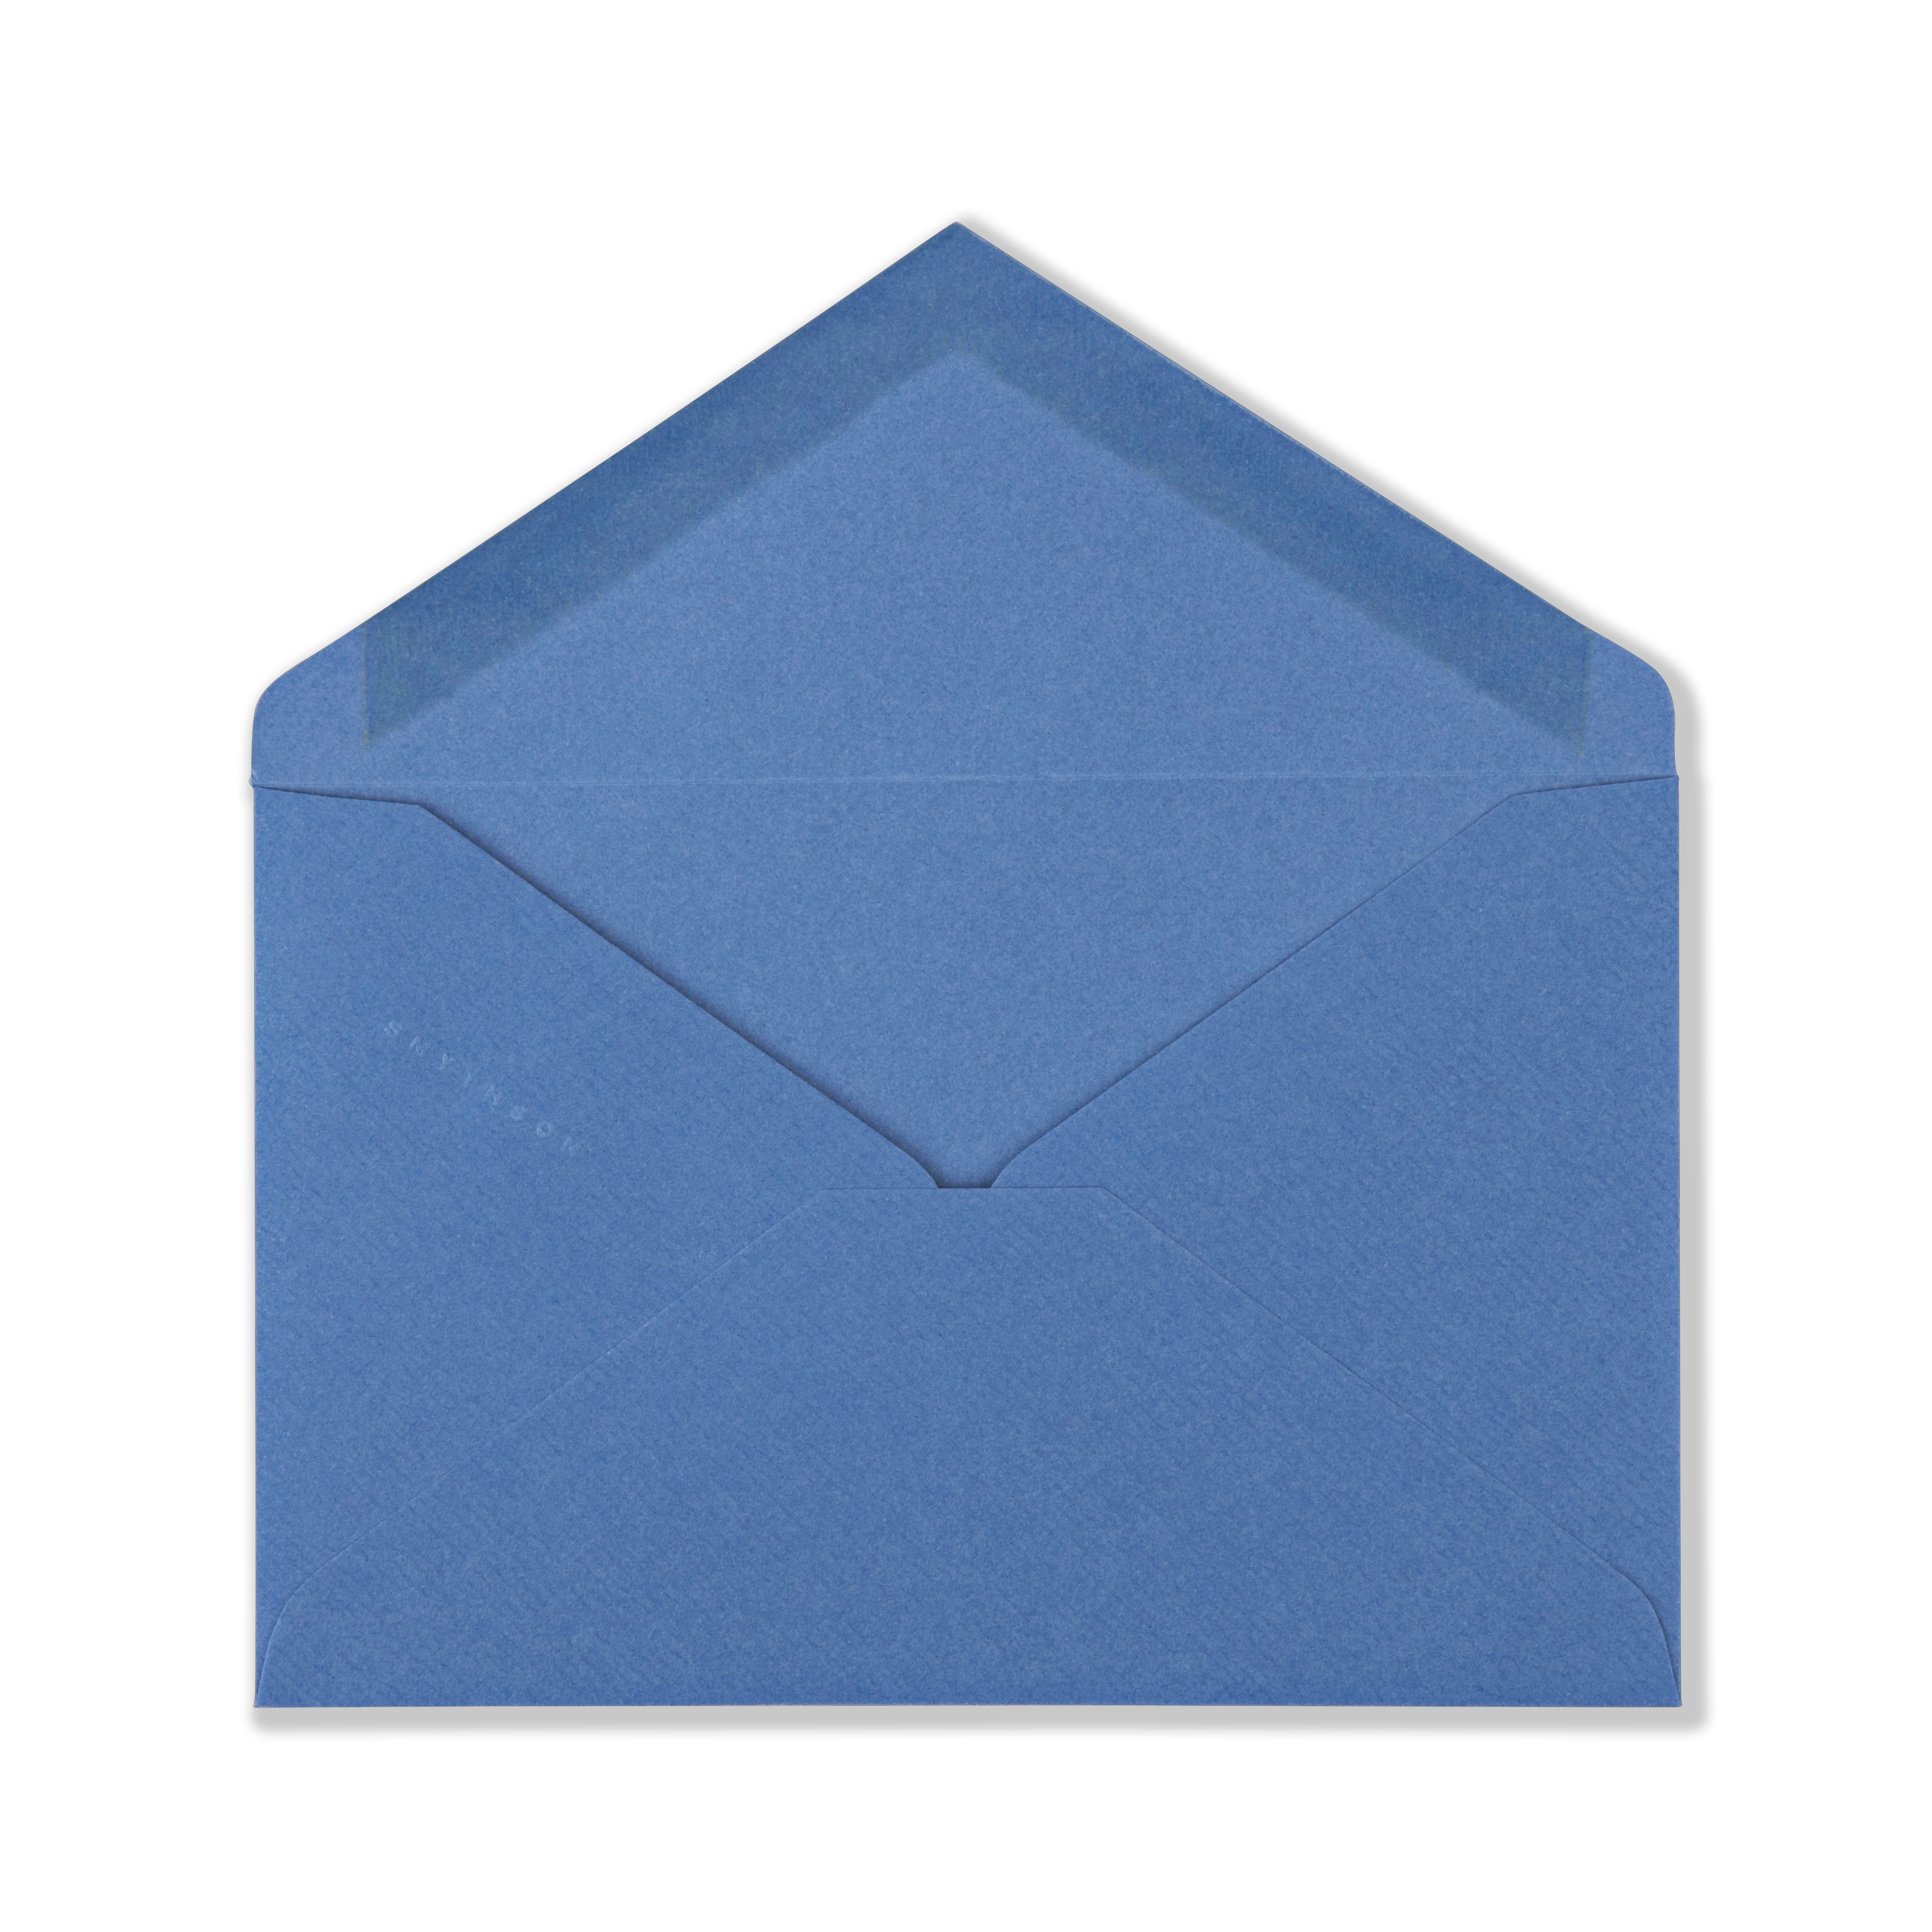 Smythson King Envelopes In Nile Blue